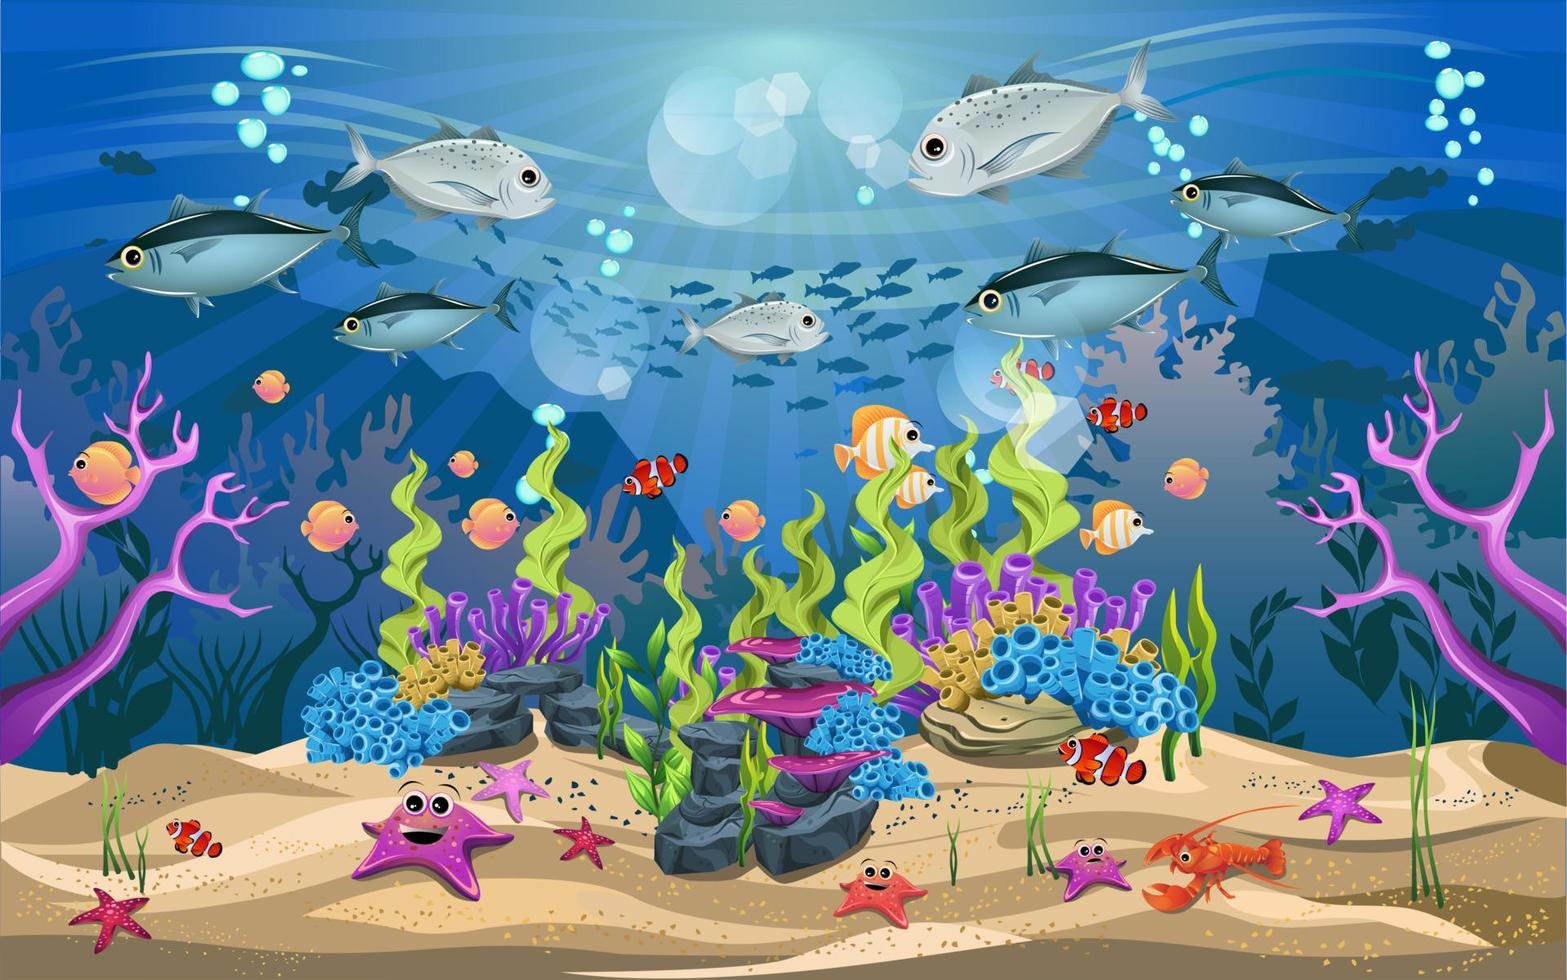 vita e splendidi ecosistemi nell'oceano. la bellezza della vita sottomarina con diversi animali e habitat. la vita marina è splendente e colorata. vettore